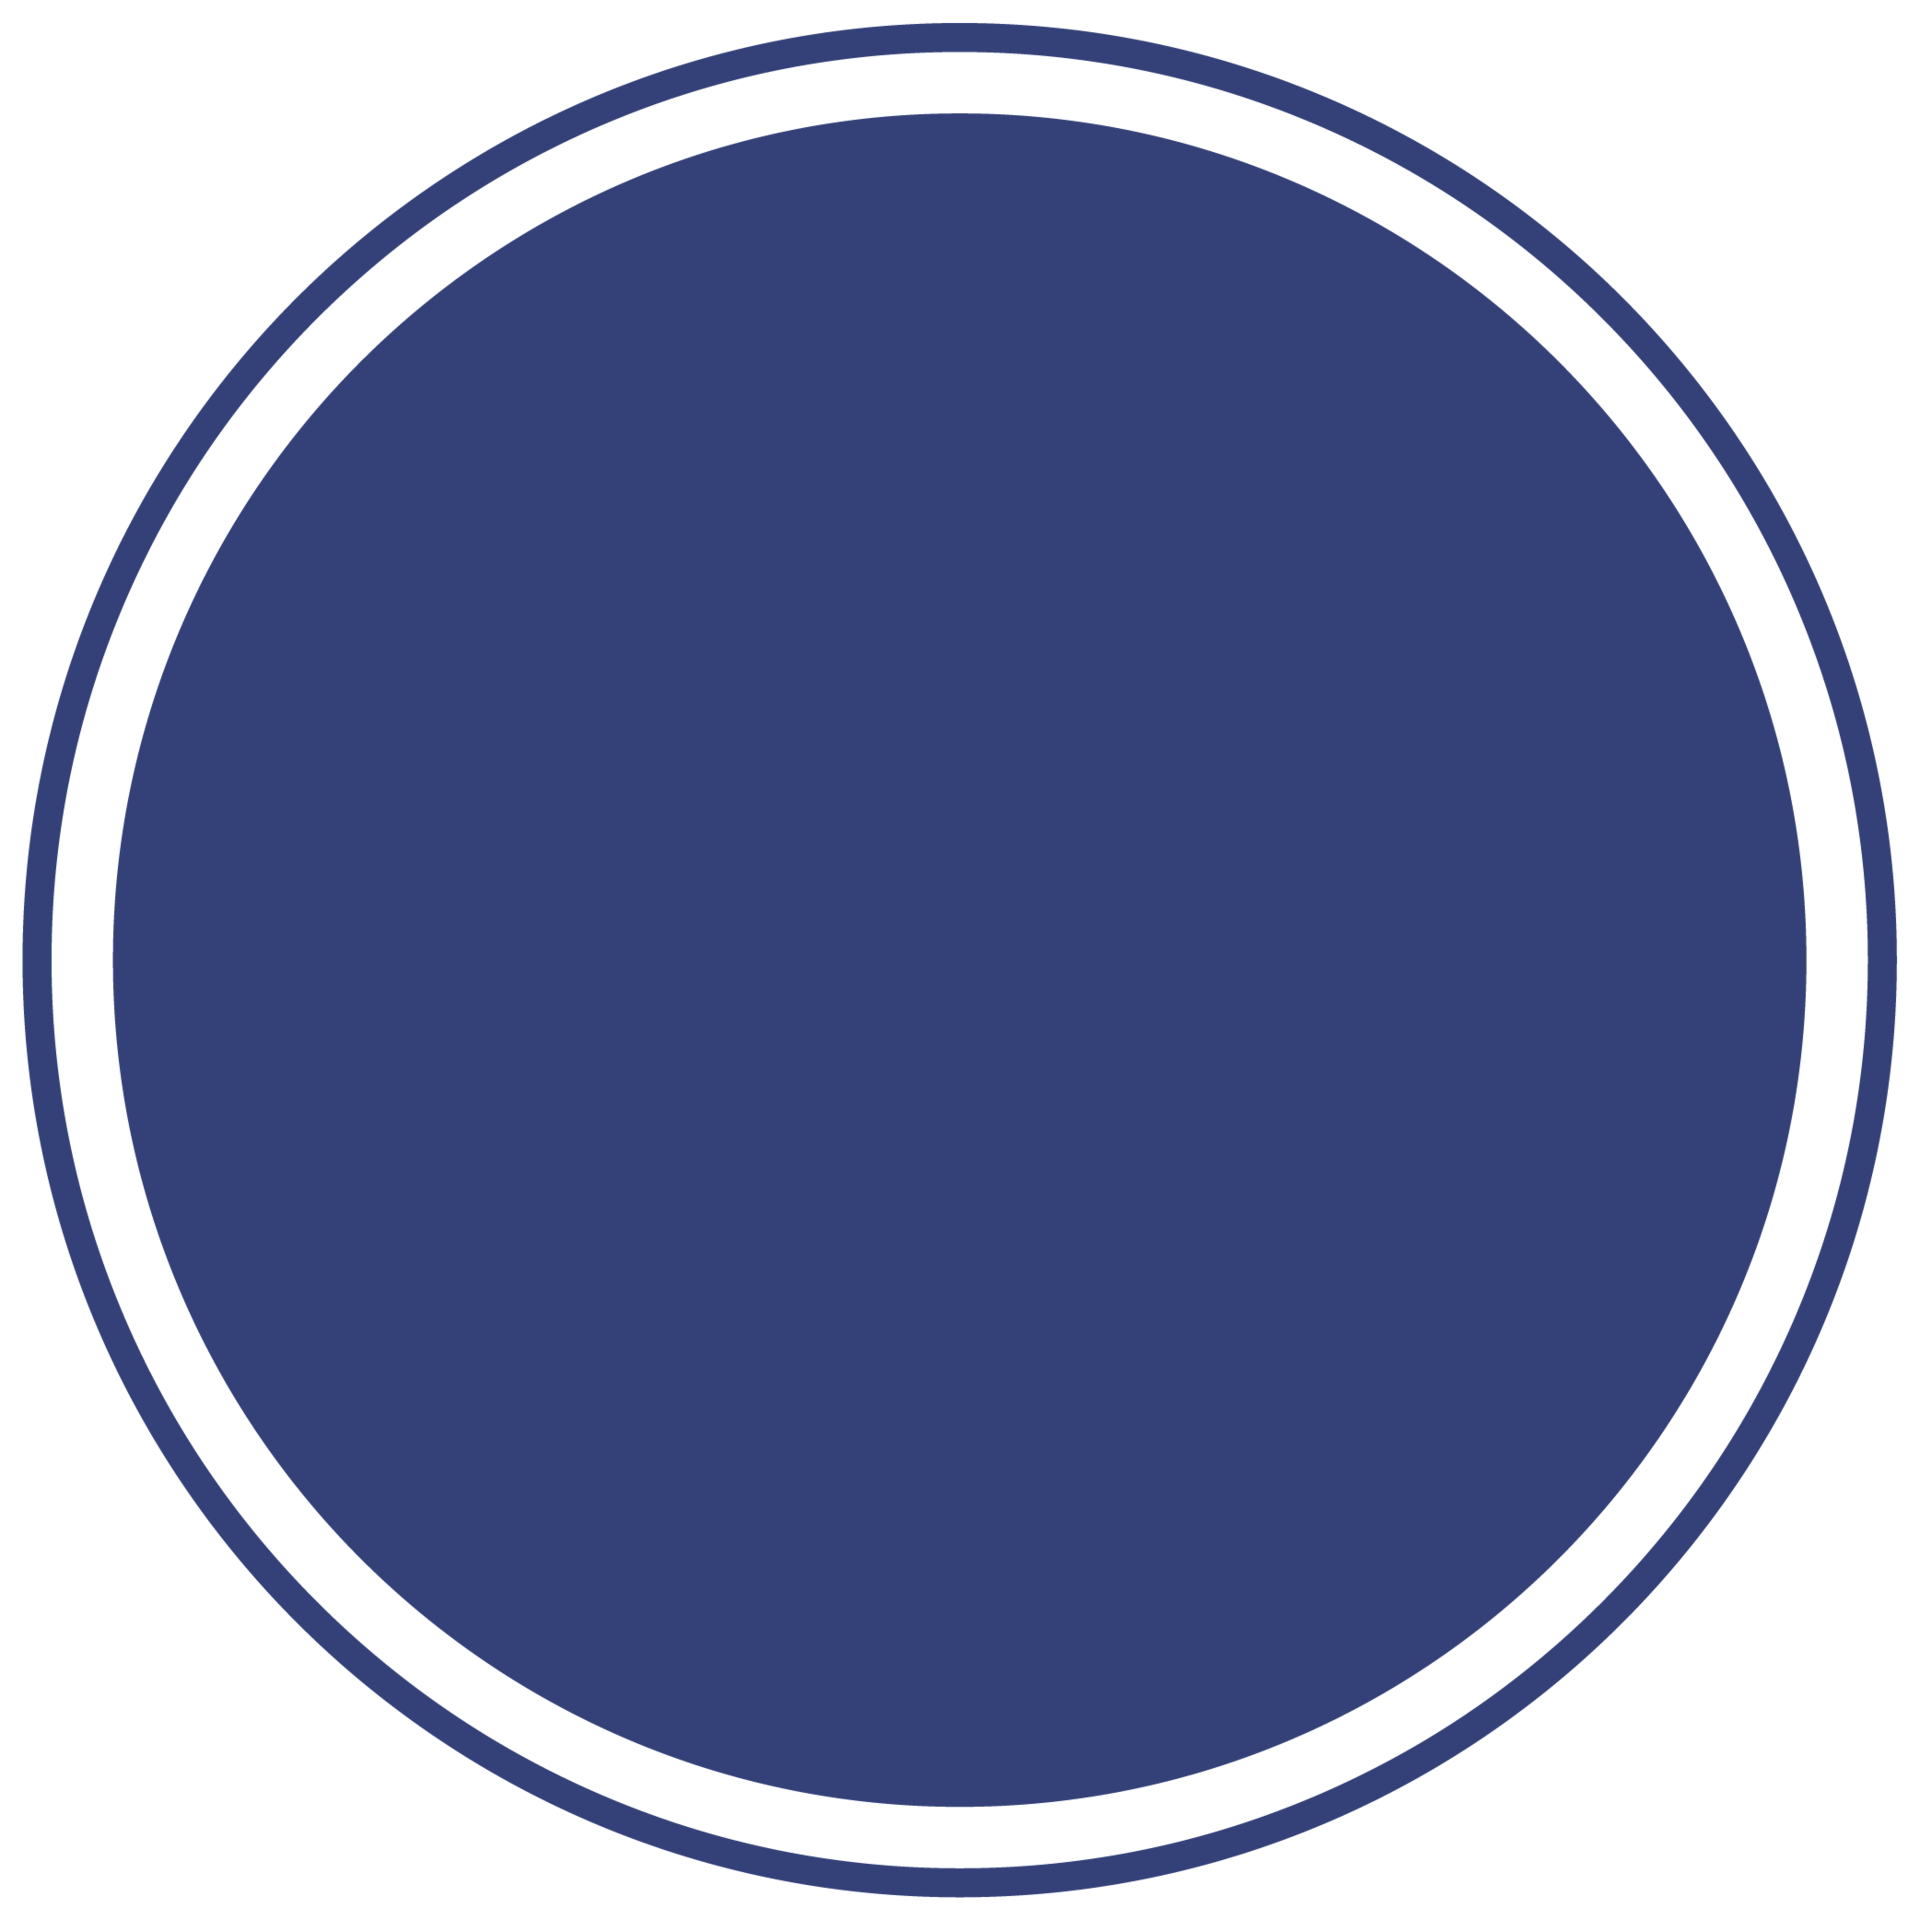 Round blue